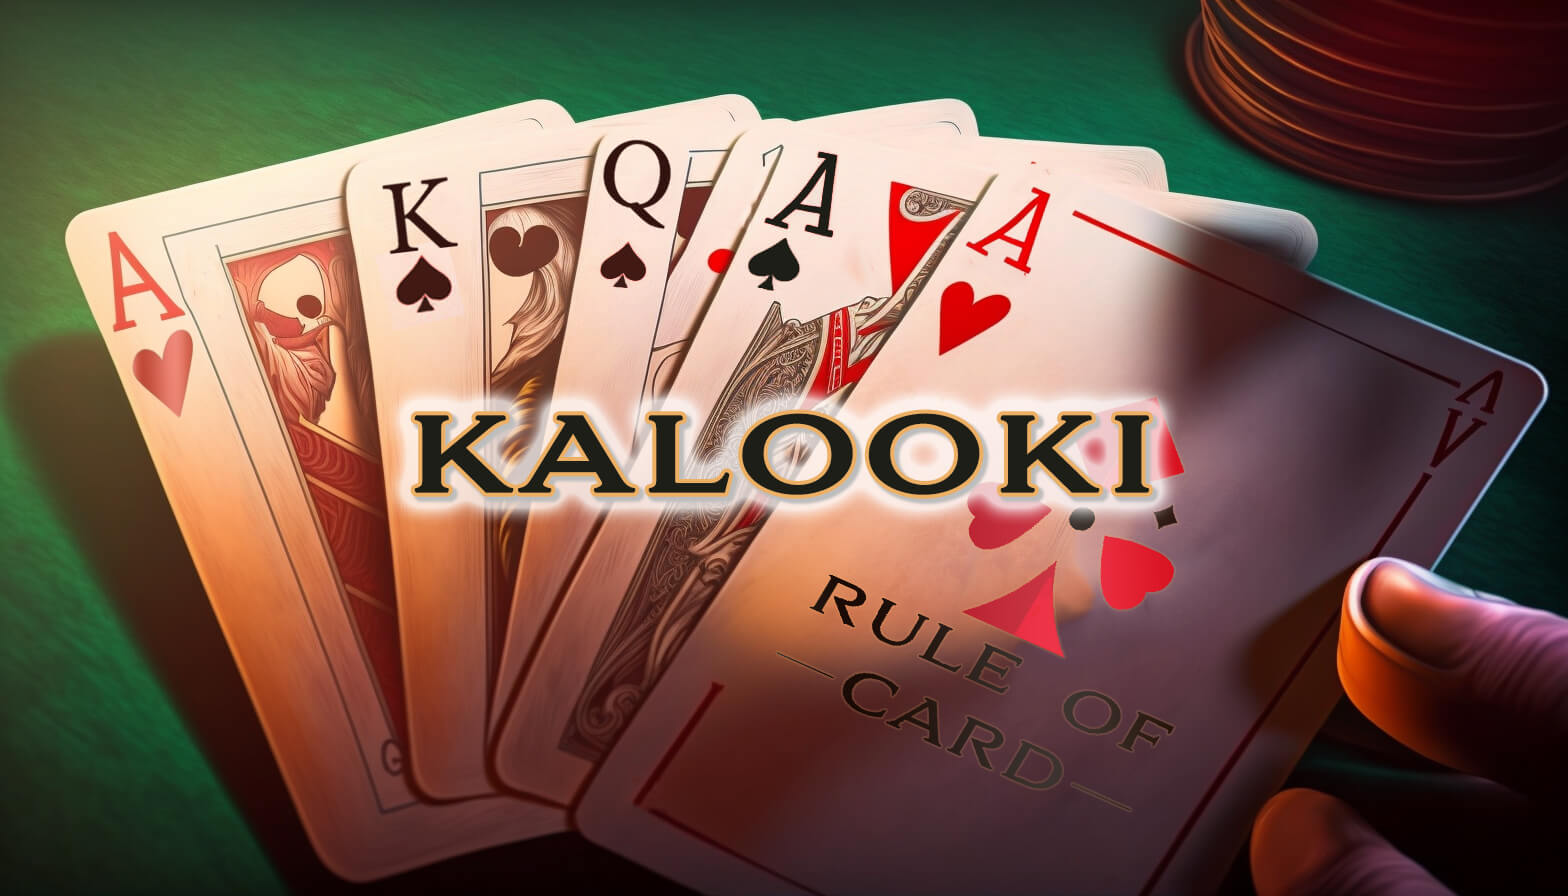 Playing the card game Kalooki